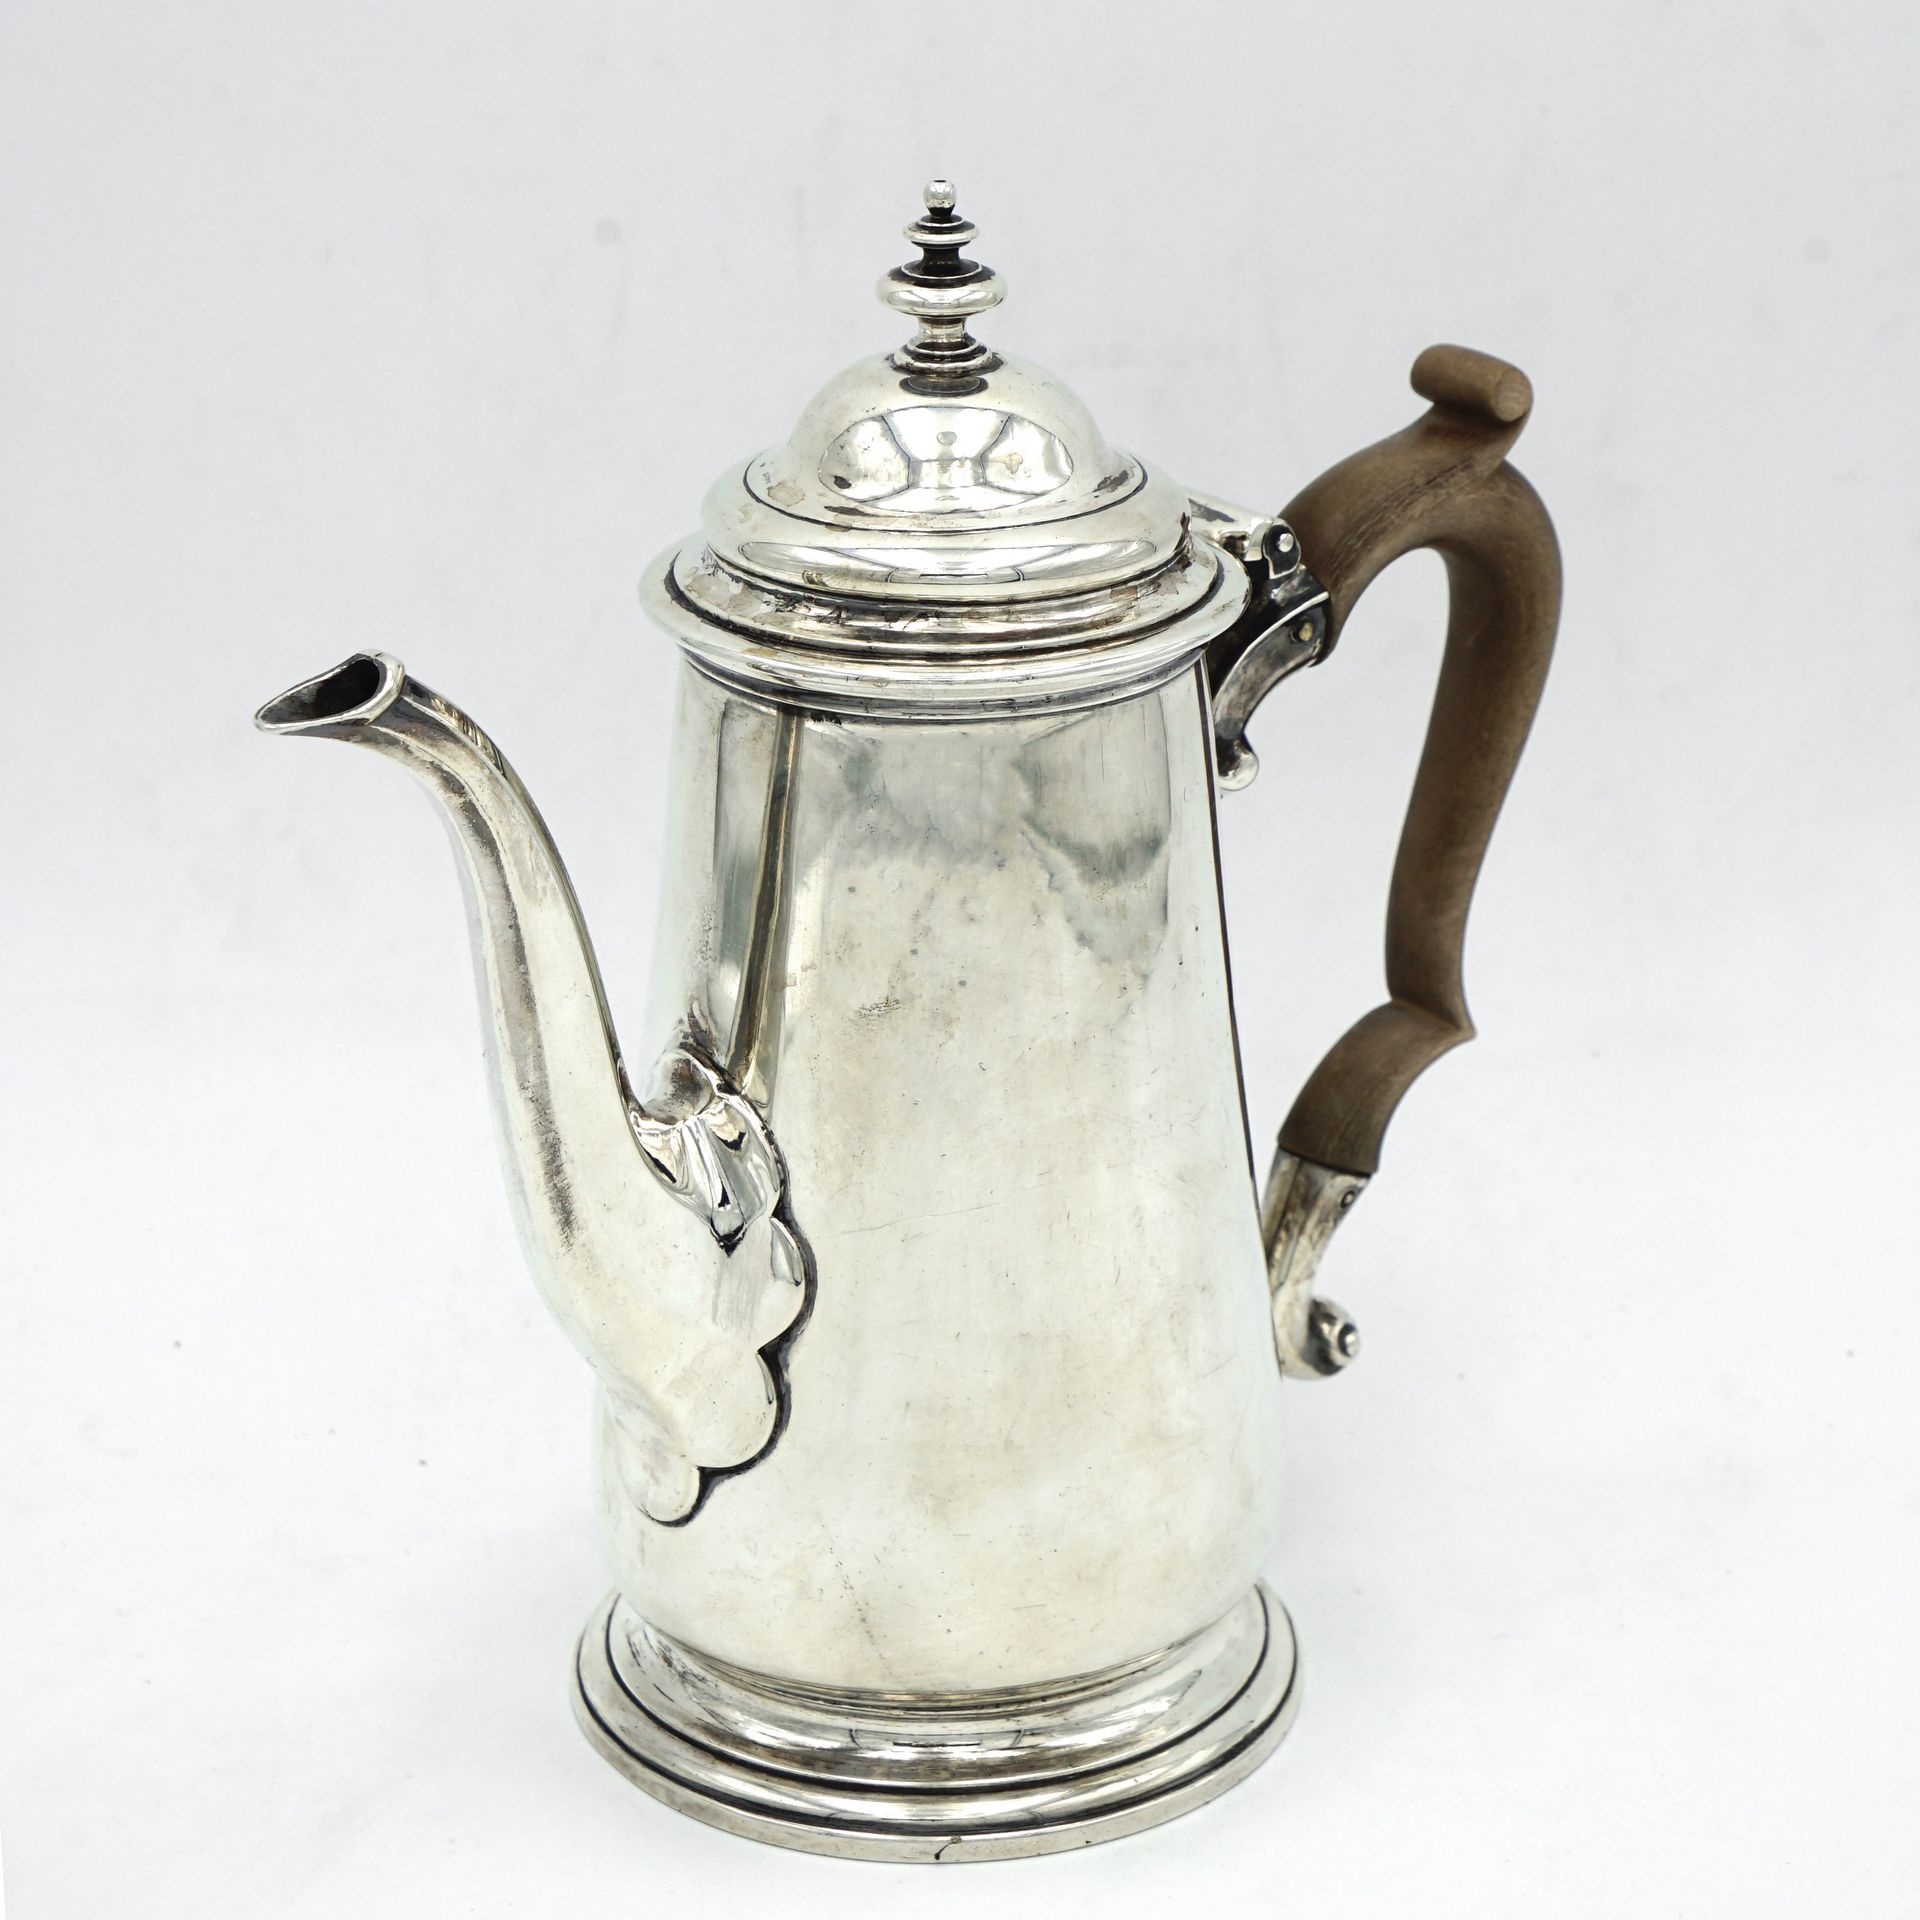 Null 925密耳银平底汤杯，带轻质木柄，伦敦1741年，金匠约翰-雅各布大师。重量599克